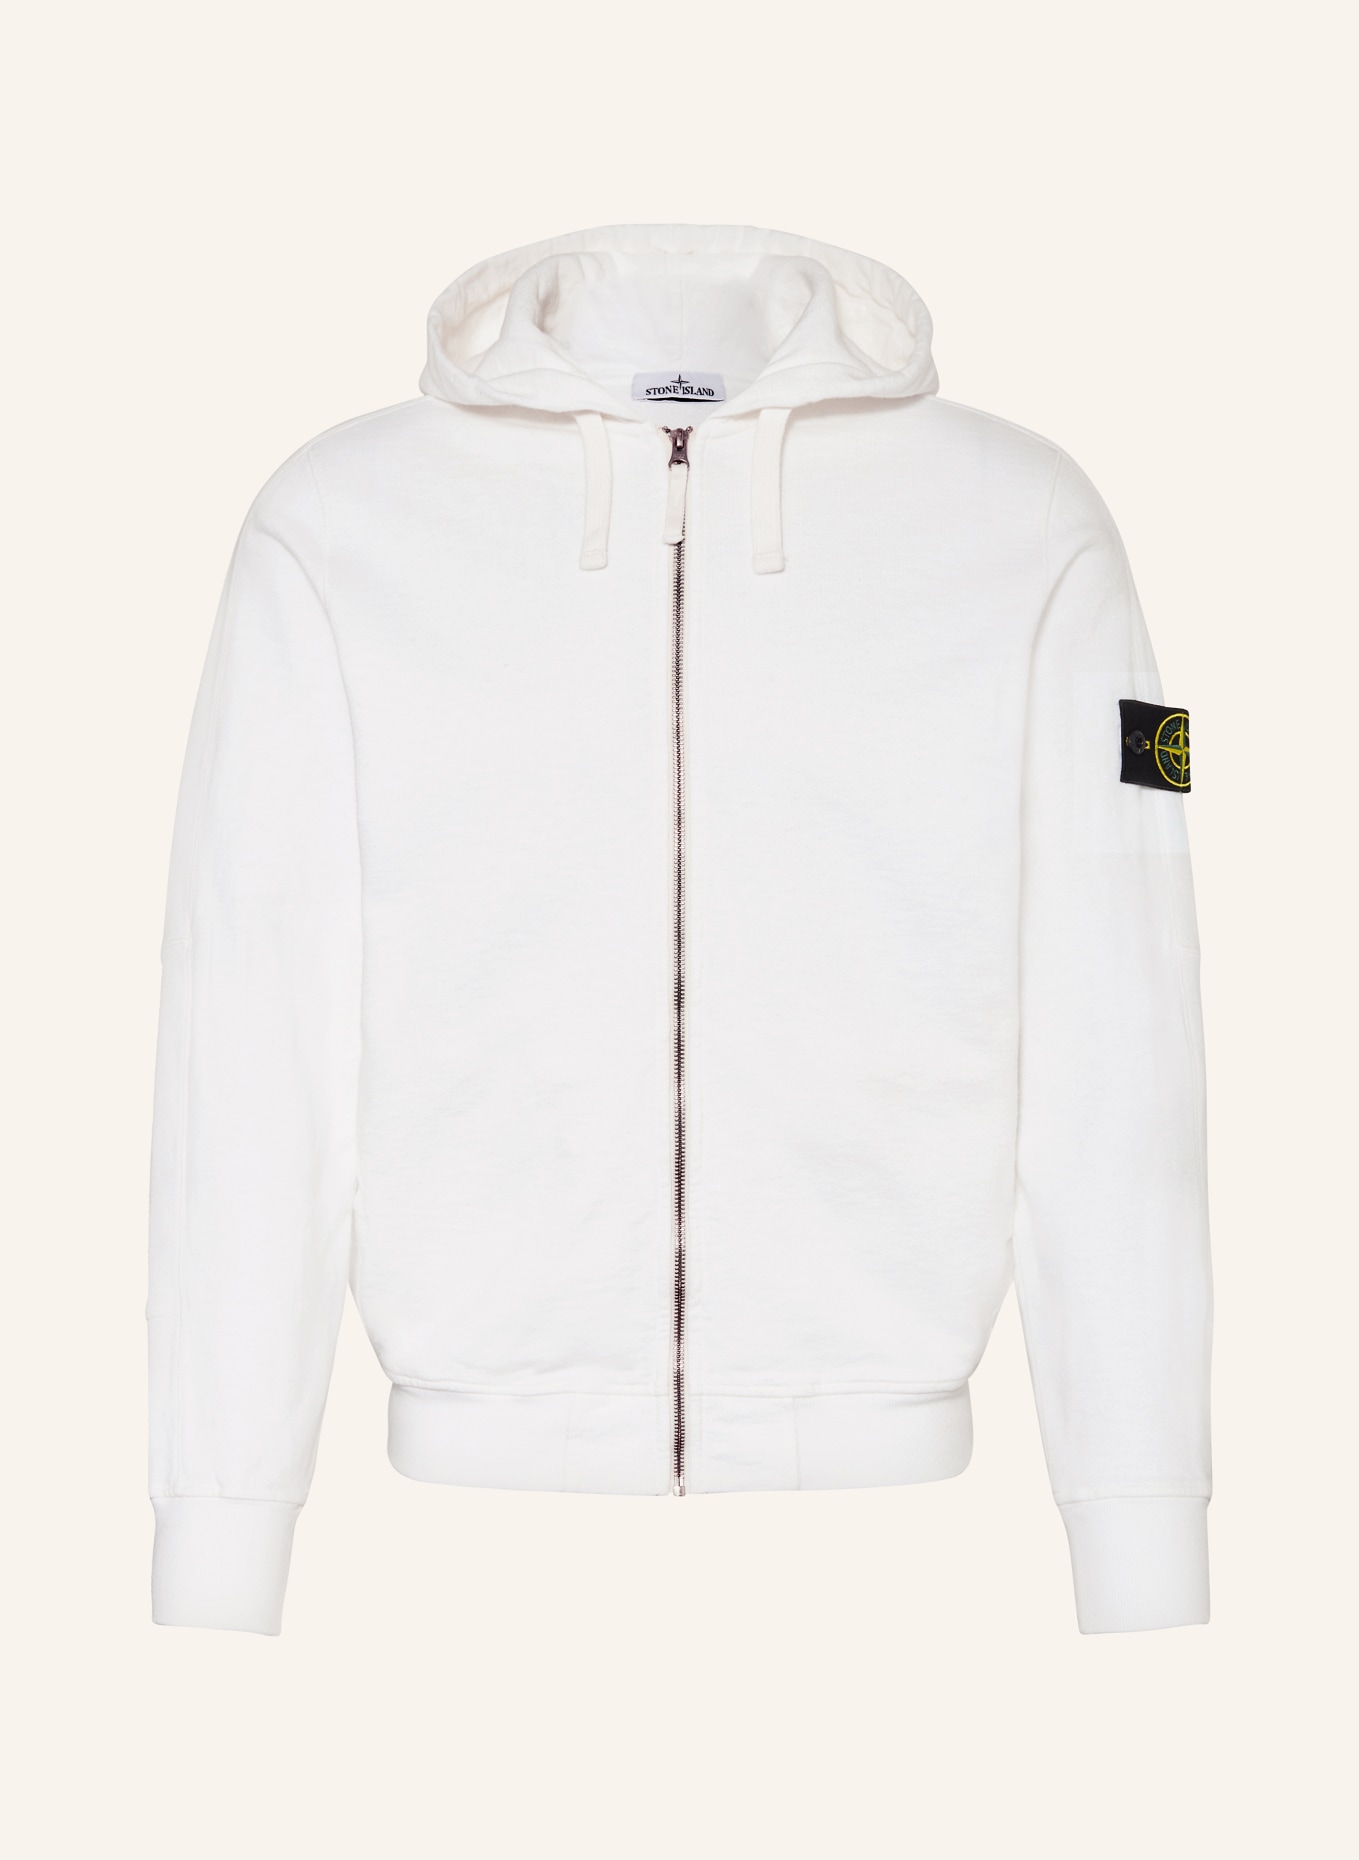 STONE ISLAND Sweat jacket, Color: WHITE (Image 1)